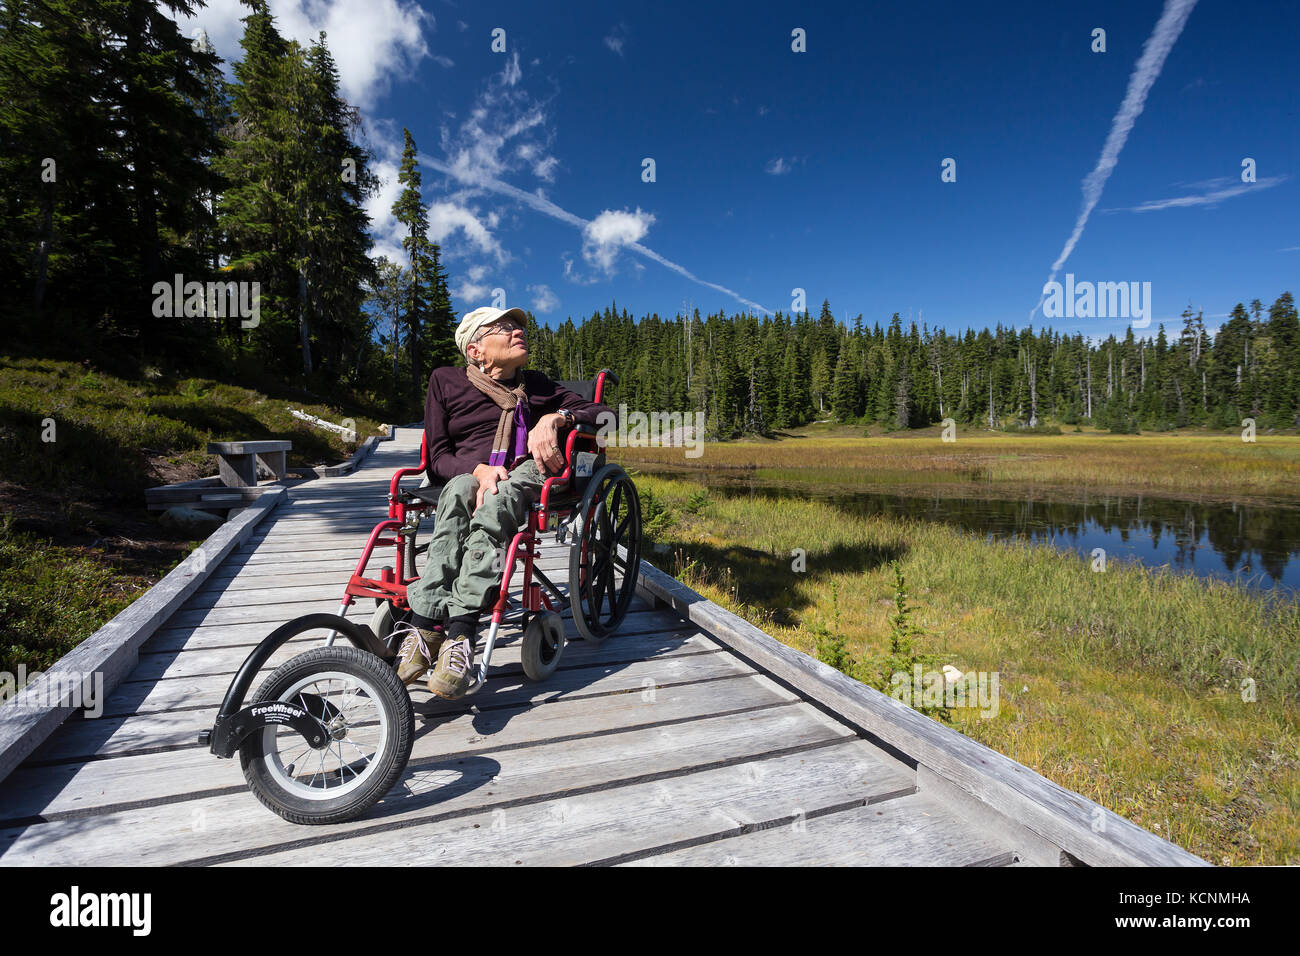 Promenades dans la région de paradise meadows fournir une accessibilité handicapés pour gens qui veulent aussi profiter du grand air, mont Washington, la vallée de Comox, Vancouver Island, British Columbia, canada Banque D'Images